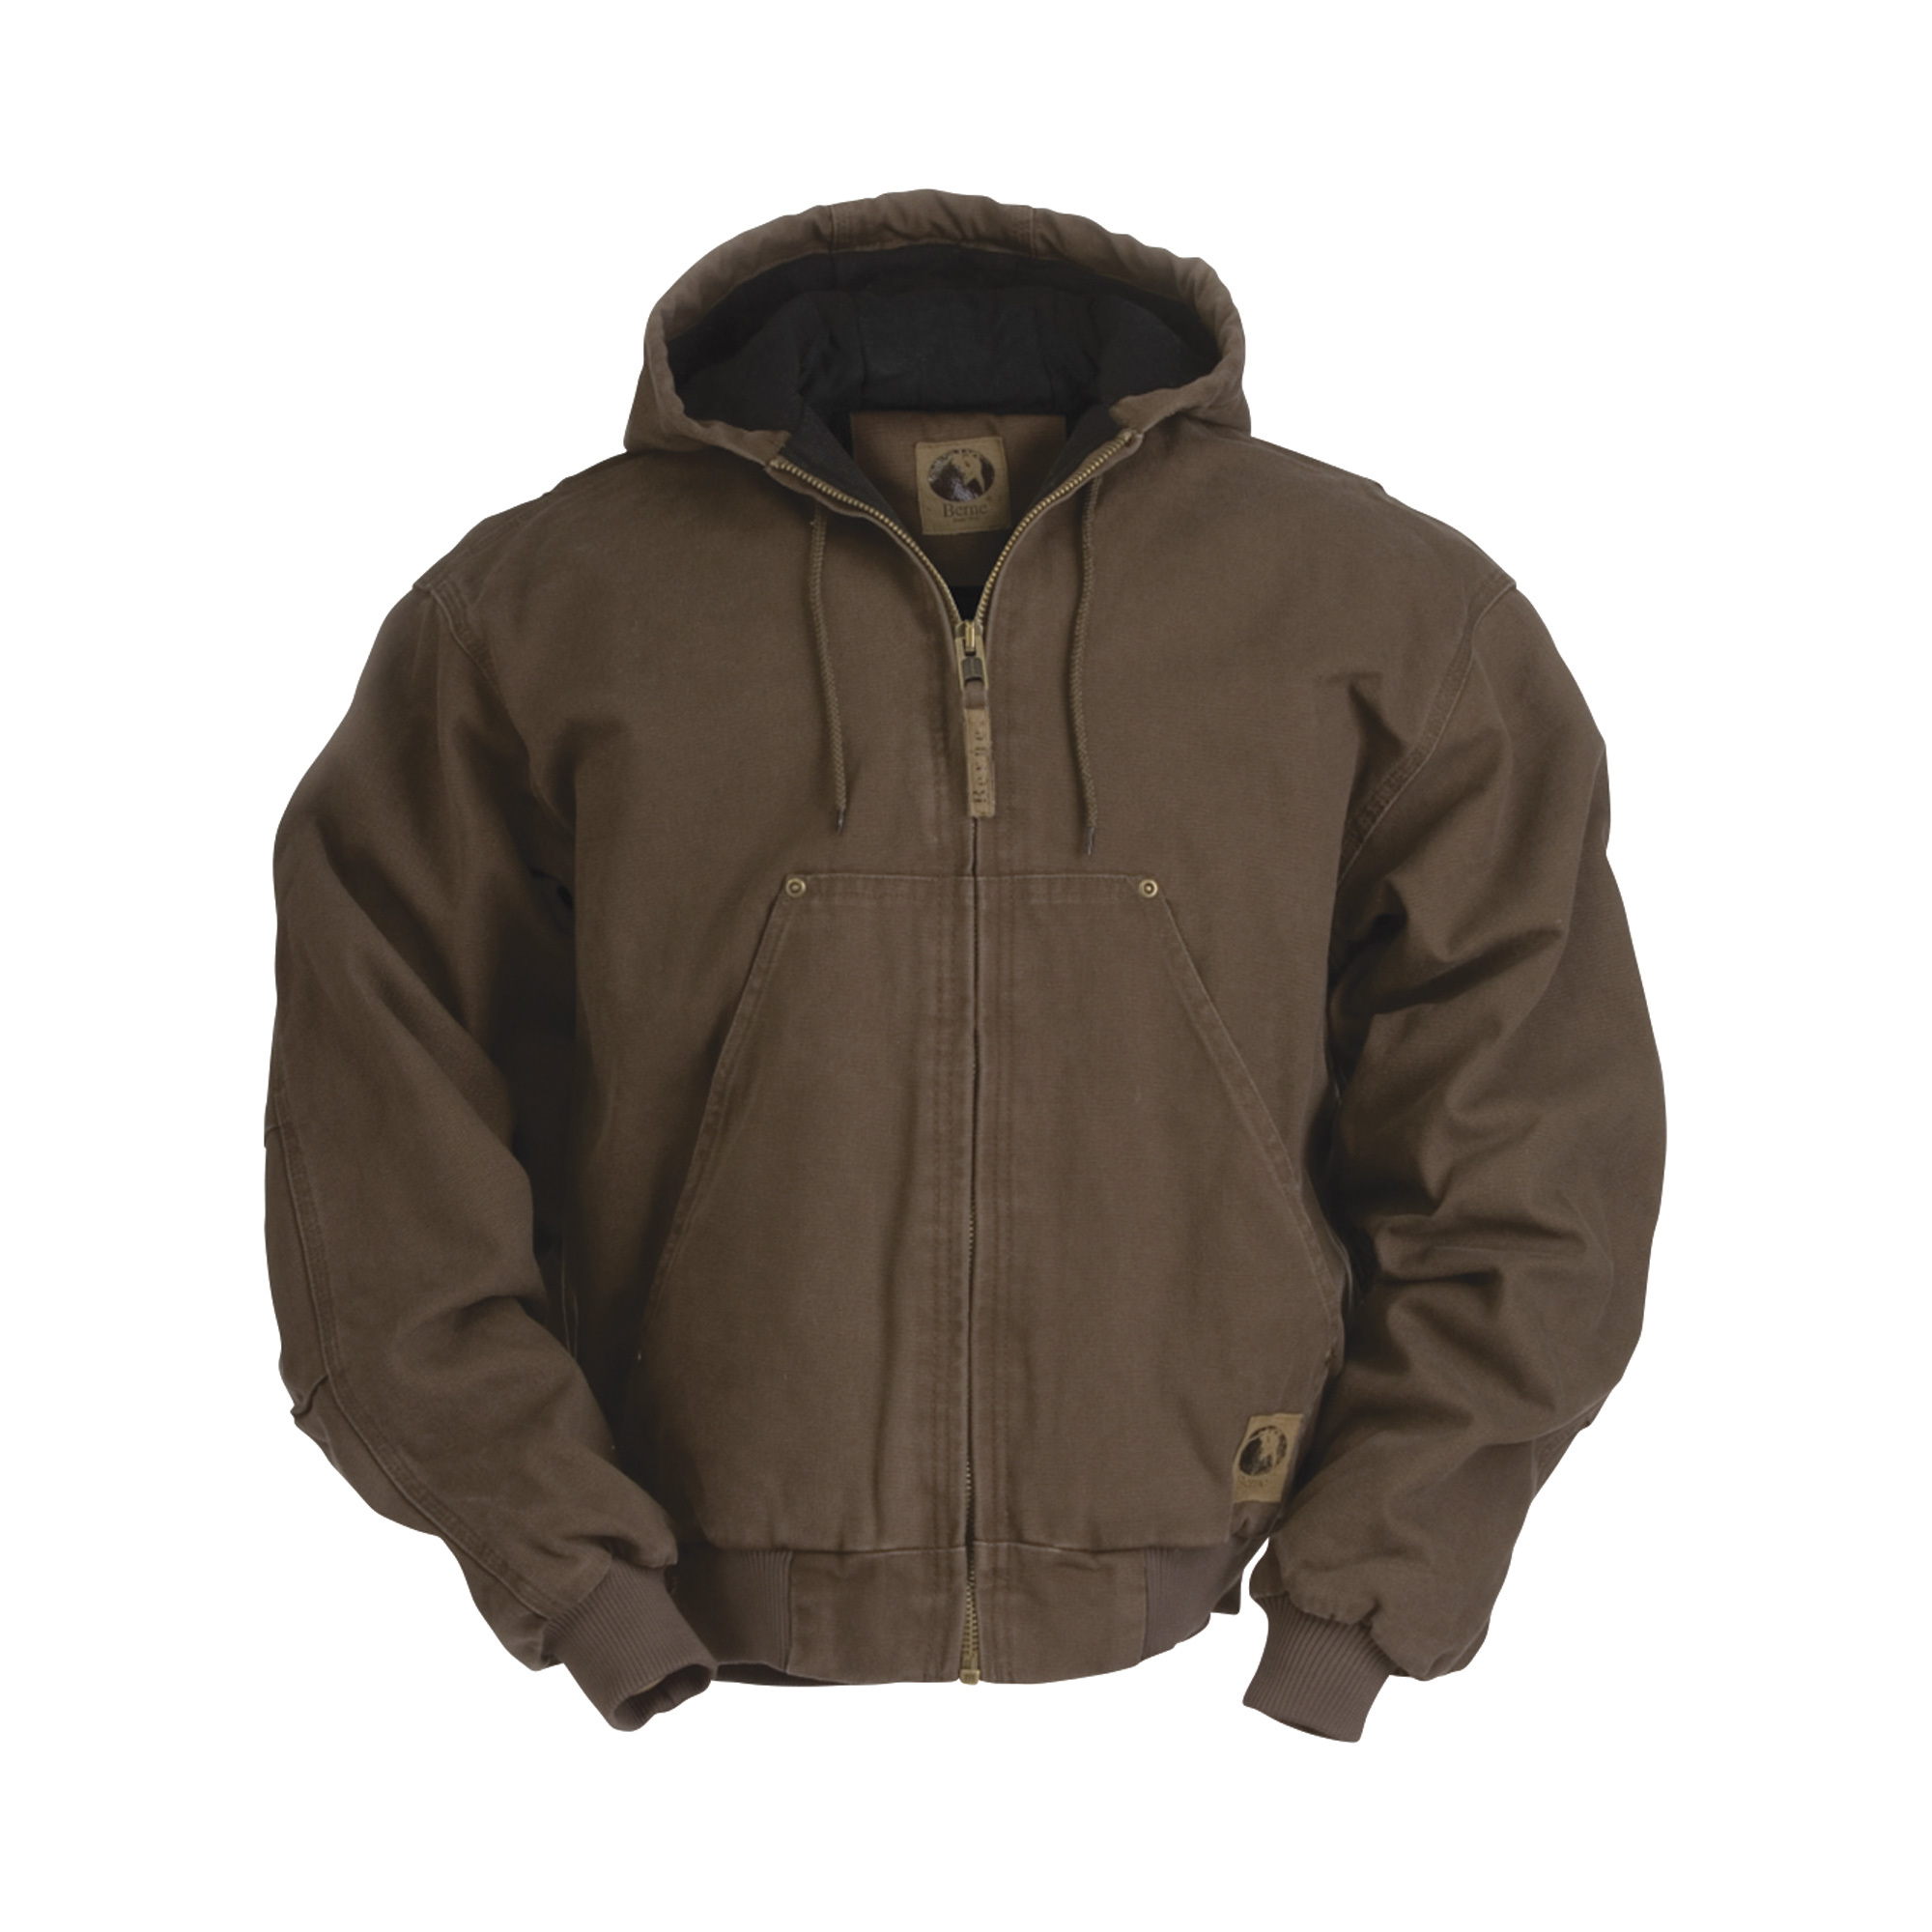 Berne Men's Original Washed Hooded Jacket - Quilt Lined, Bark, Medium, Model HJ375BBR440